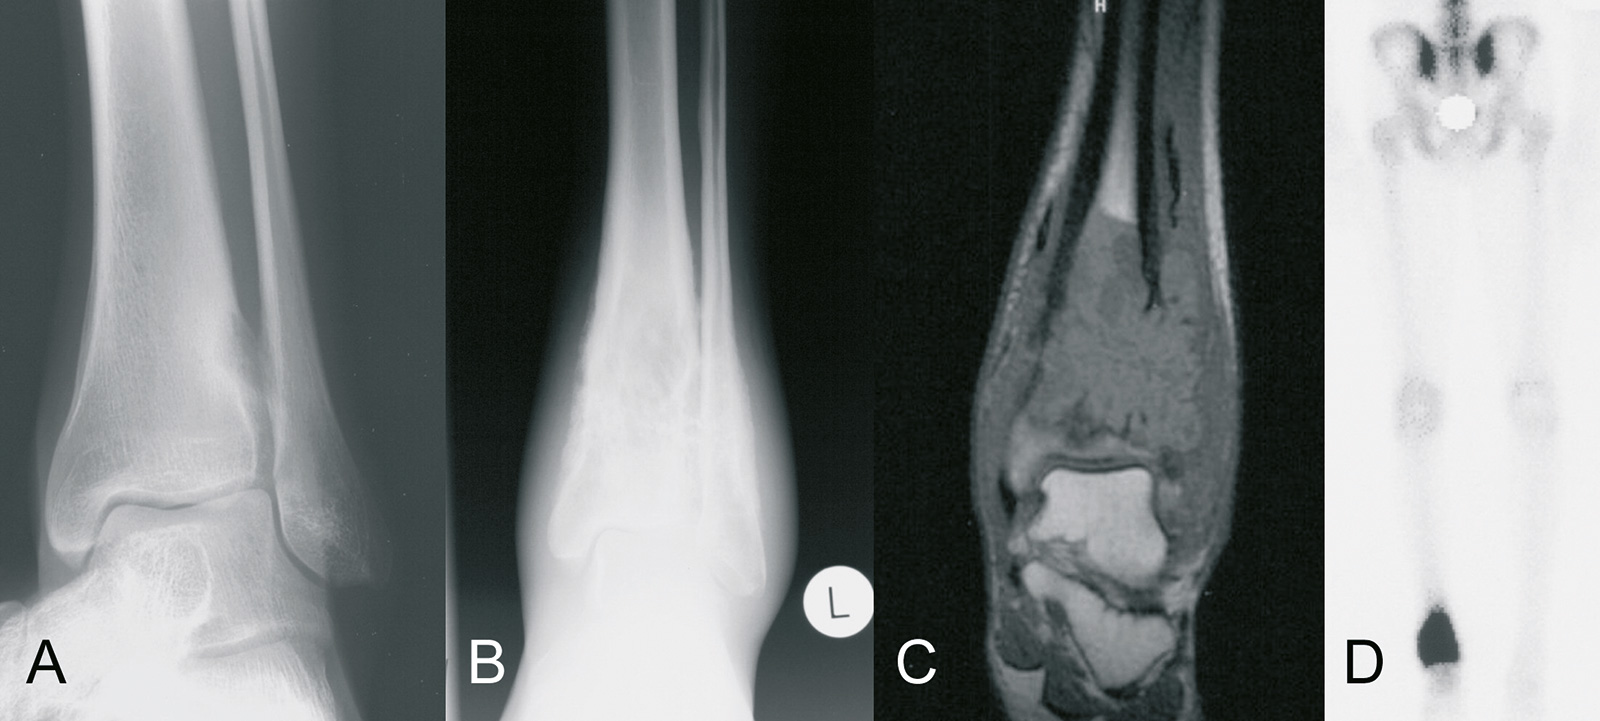 Abb. 8-72: Osteosarkom der distalen Tibia. Auf der initialen Röntgenaufnahme (A) wurde der Tumor wegen der nur geringen Veränderung nicht diagnostiziert, 4 Monate später zeigt sich ein ausgedehntes Osteosarkom: natives Röntgenbild (B), MRT-Bildgebung (C) 